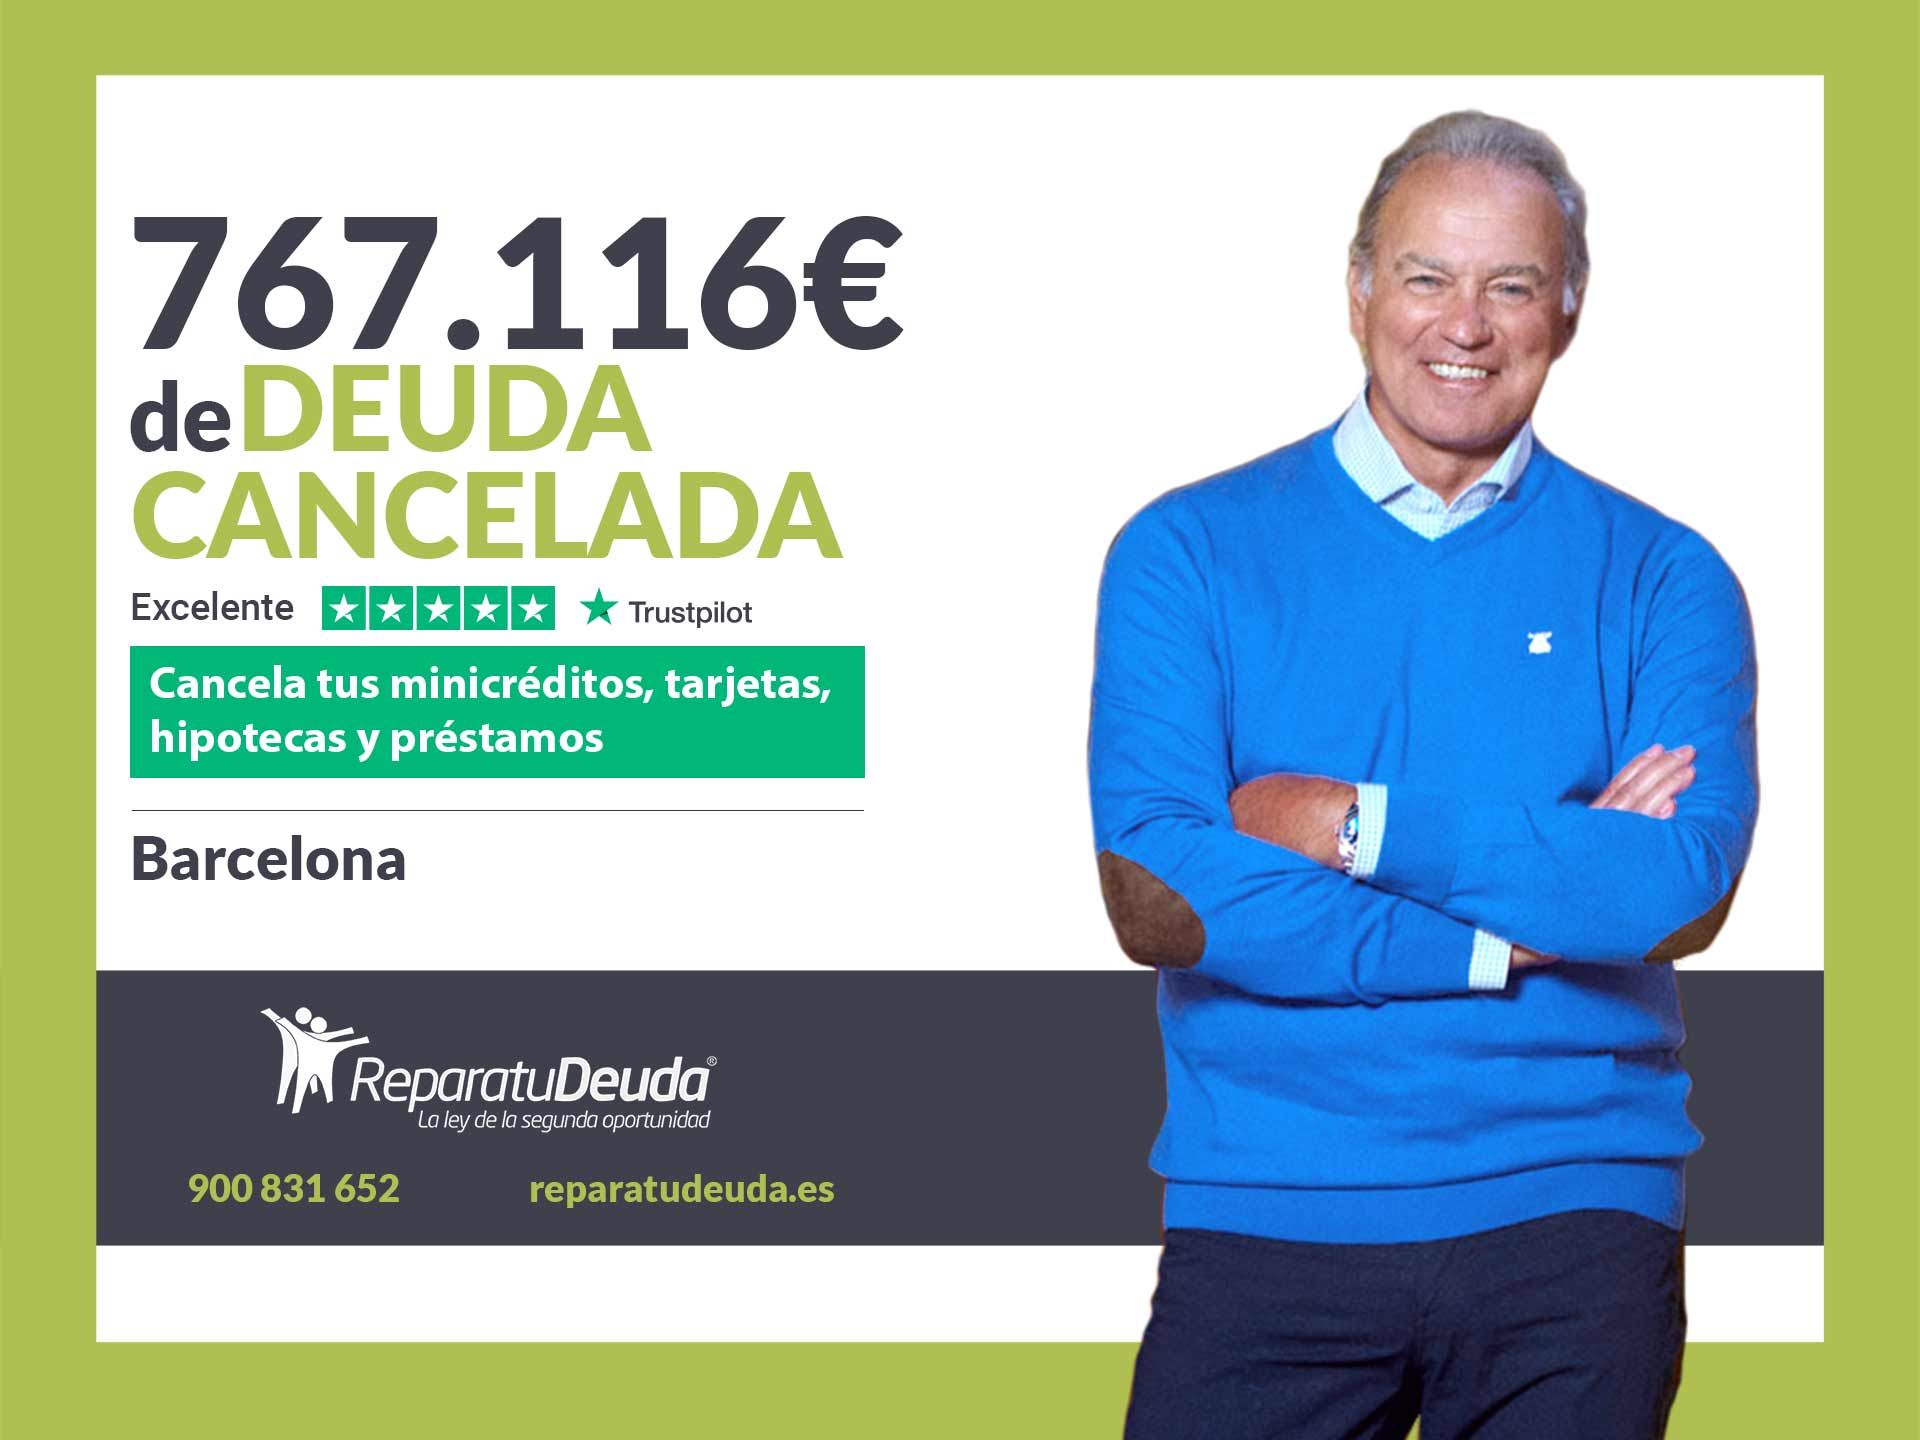 Repara tu Deuda Abogados cancela 767.116? en Barcelona (Catalunya) gracias a la Ley de Segunda Oportunidad